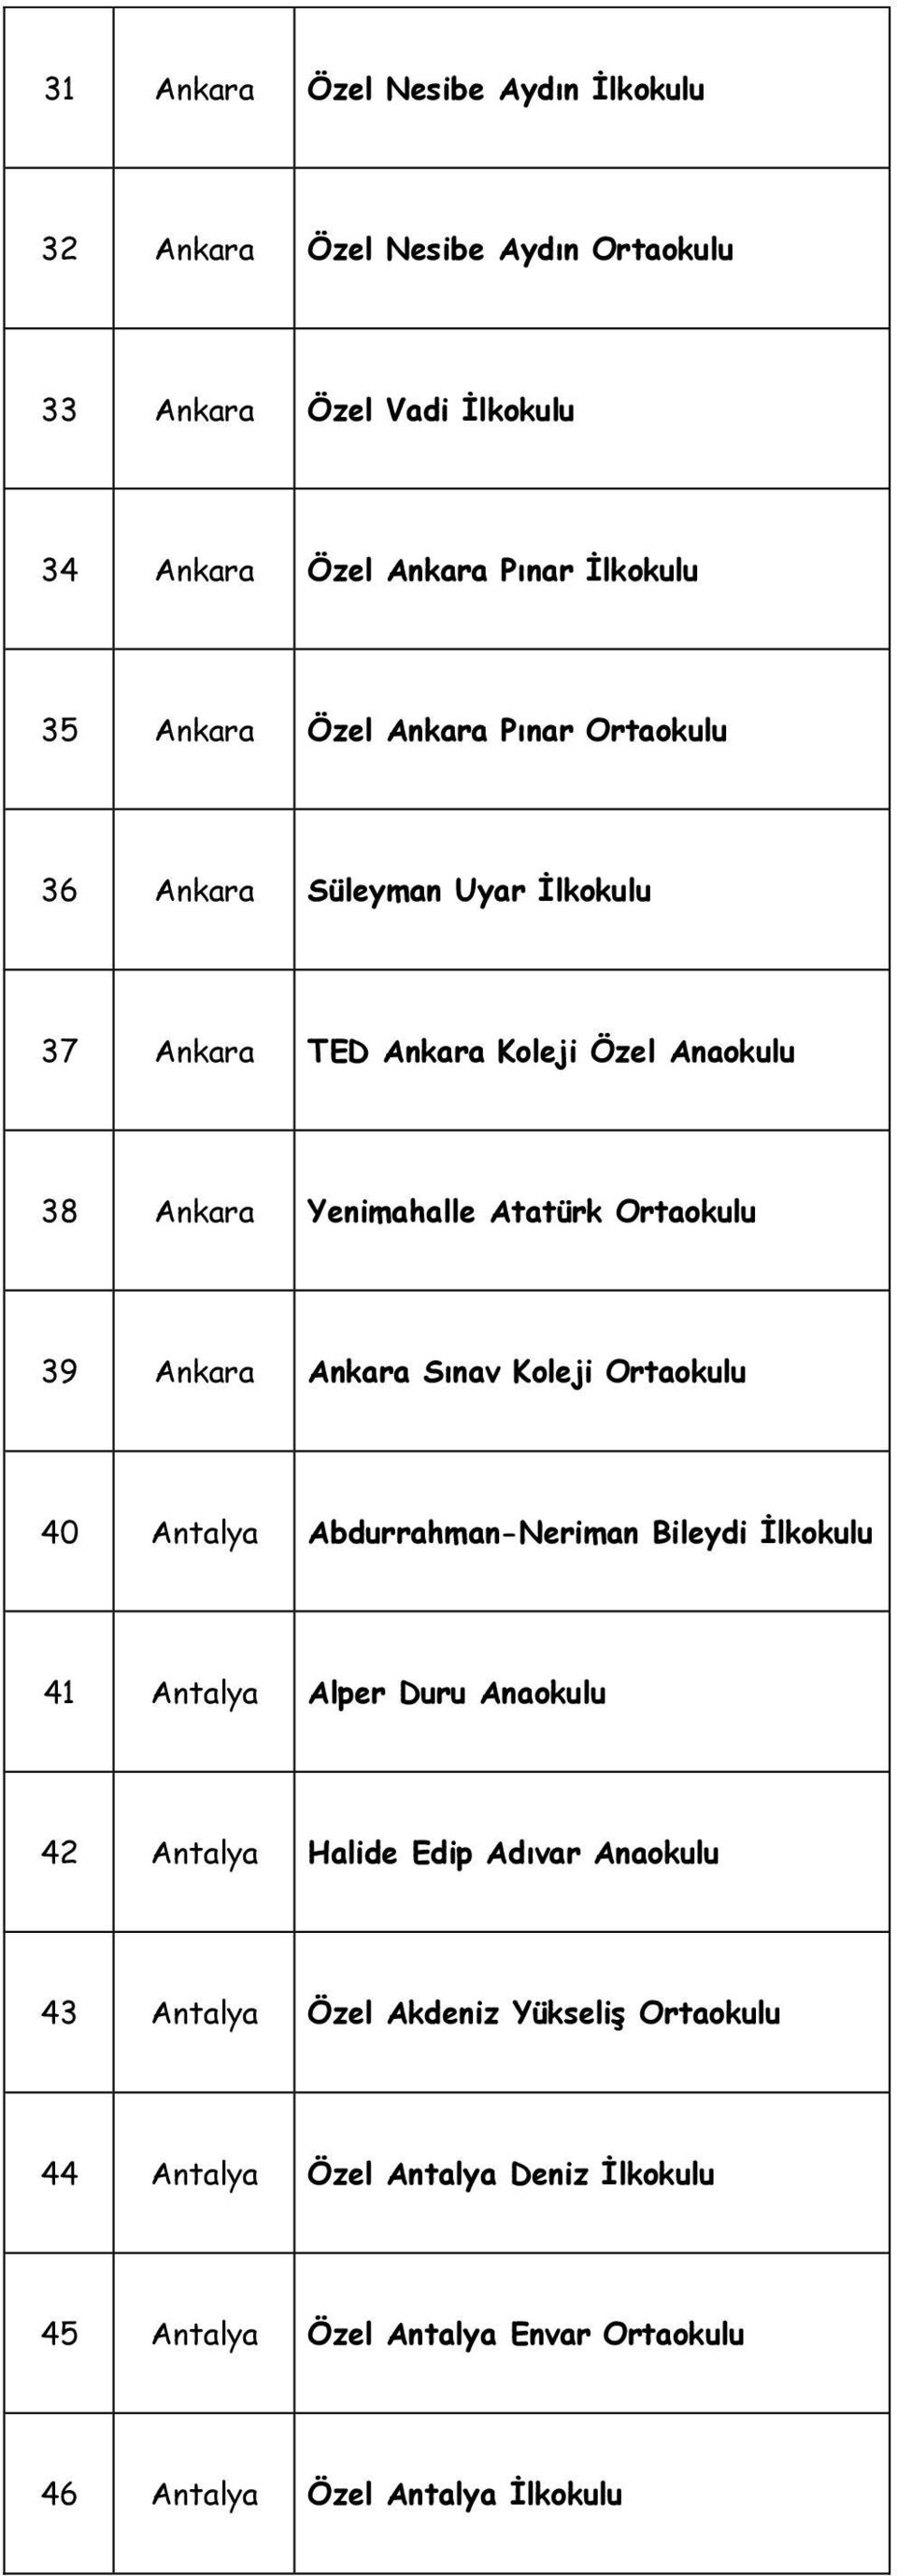 Ankara Ankara Sınav Koleji 40 Antalya Abdurrahman-Neriman Bileydi İlkokulu 41 Antalya Alper Duru Anaokulu 42 Antalya Halide Edip Adıvar